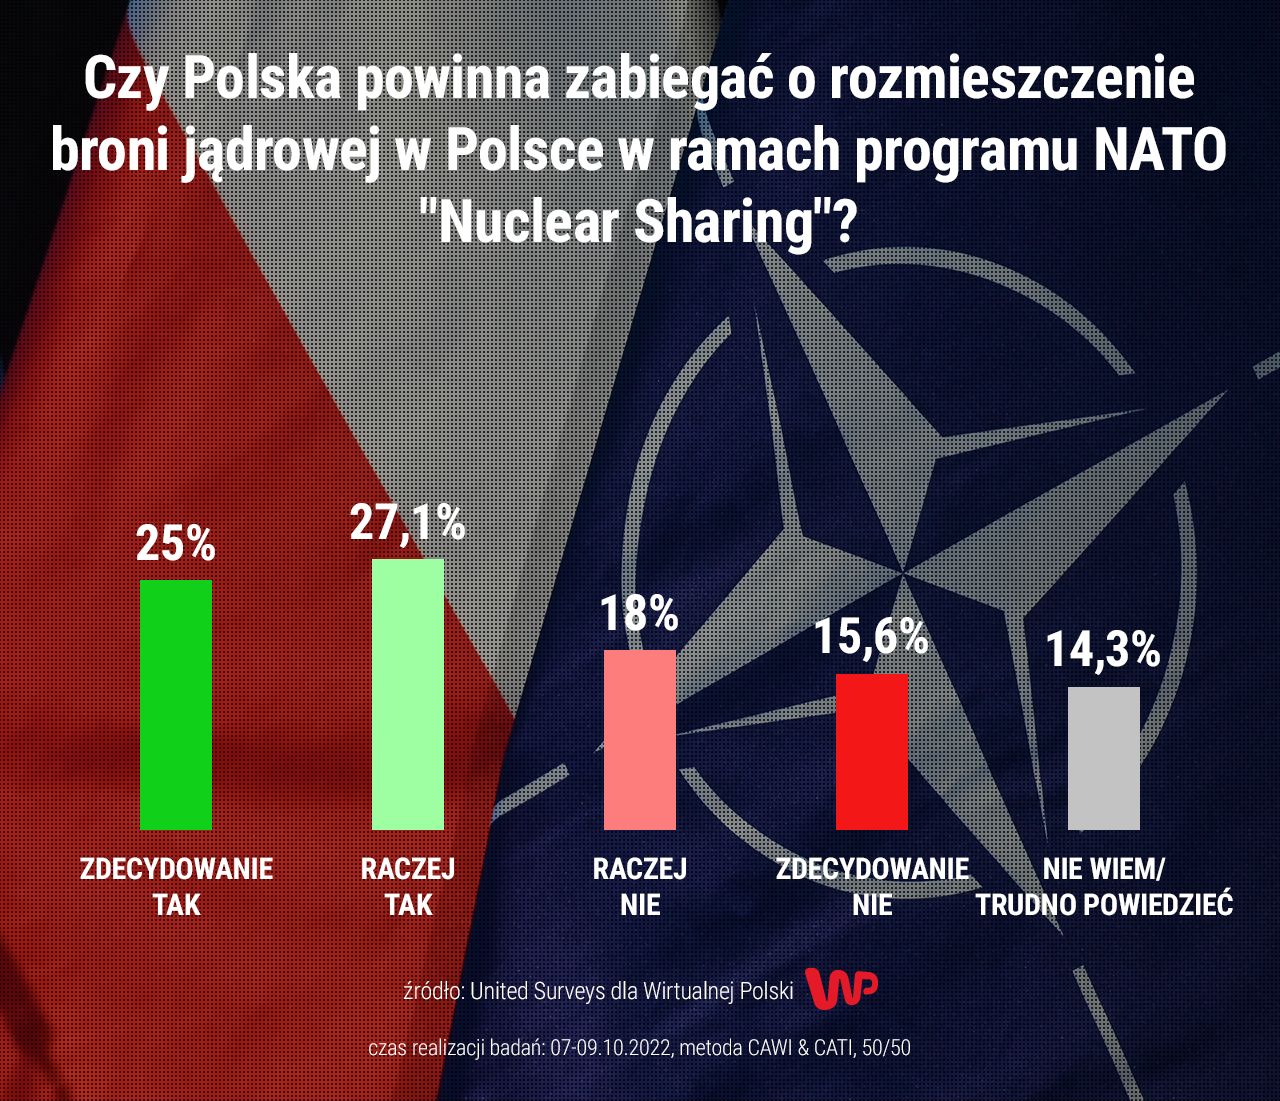 Czy Polska powinna zabiegać o rozmieszczenie broni jądrowej w Polsce w ramach programu NATO "Nuclear Sharing"?